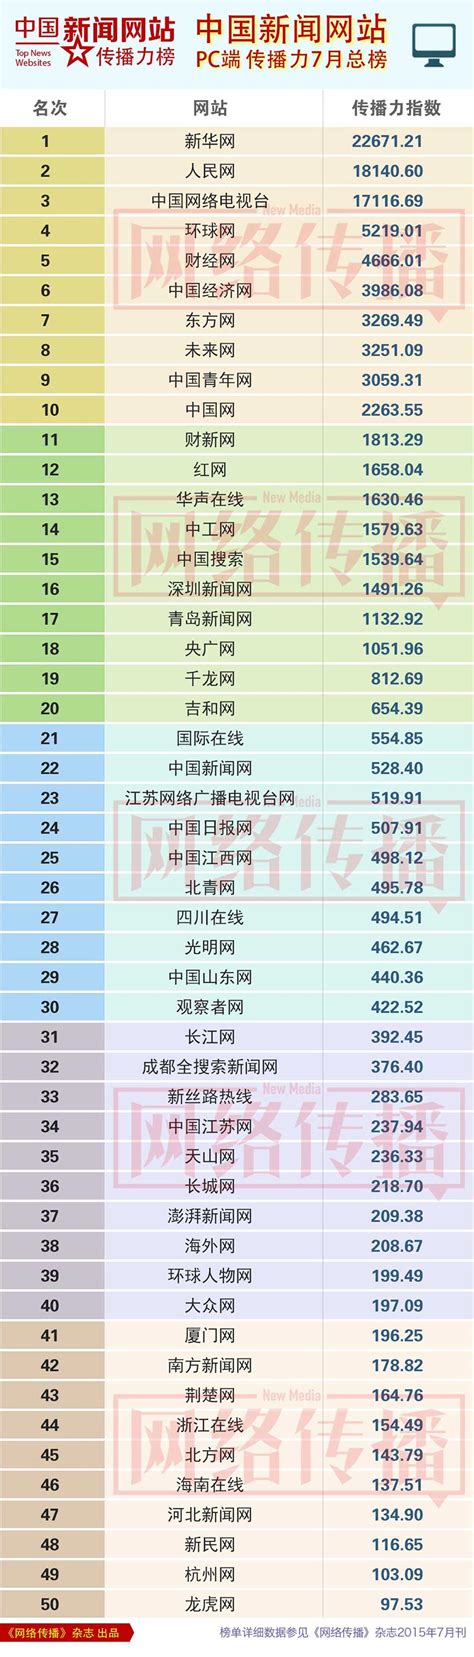 2015年7月中国新闻网站传播力排行榜（内附5榜单）-中央网络安全和信息化委员会办公室